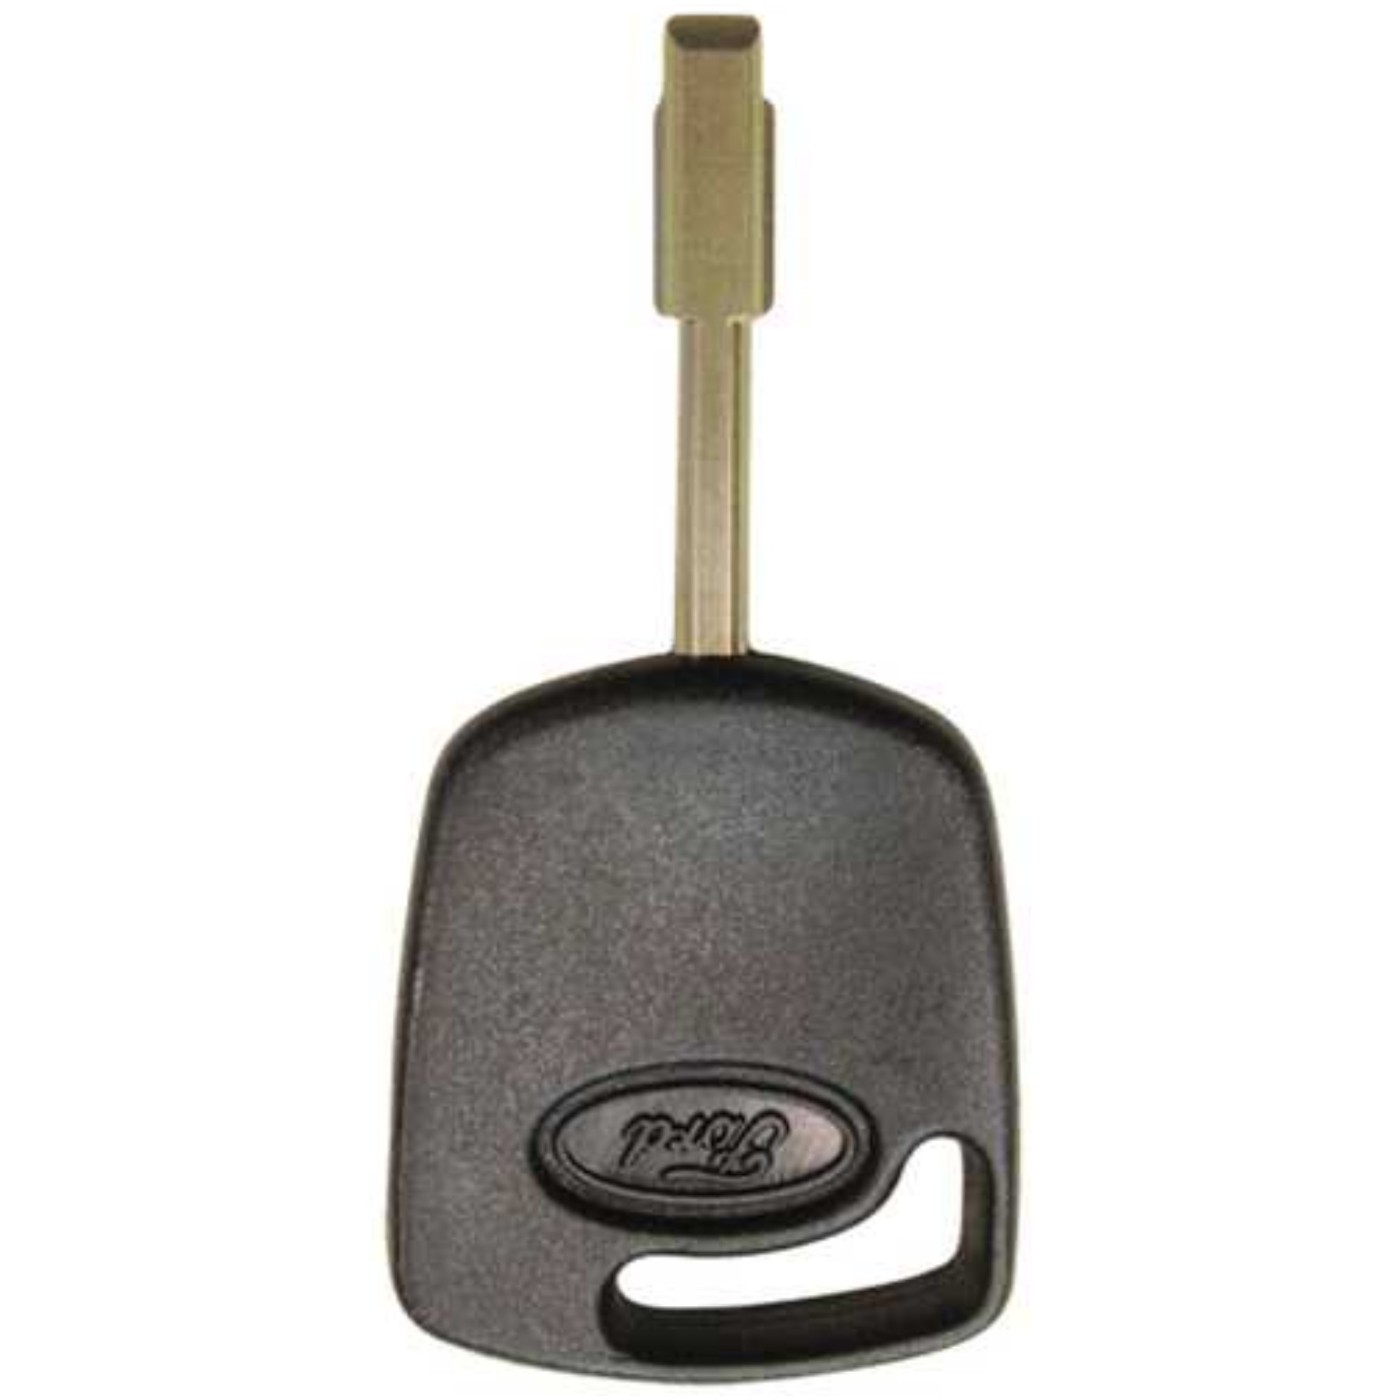 Car key 1